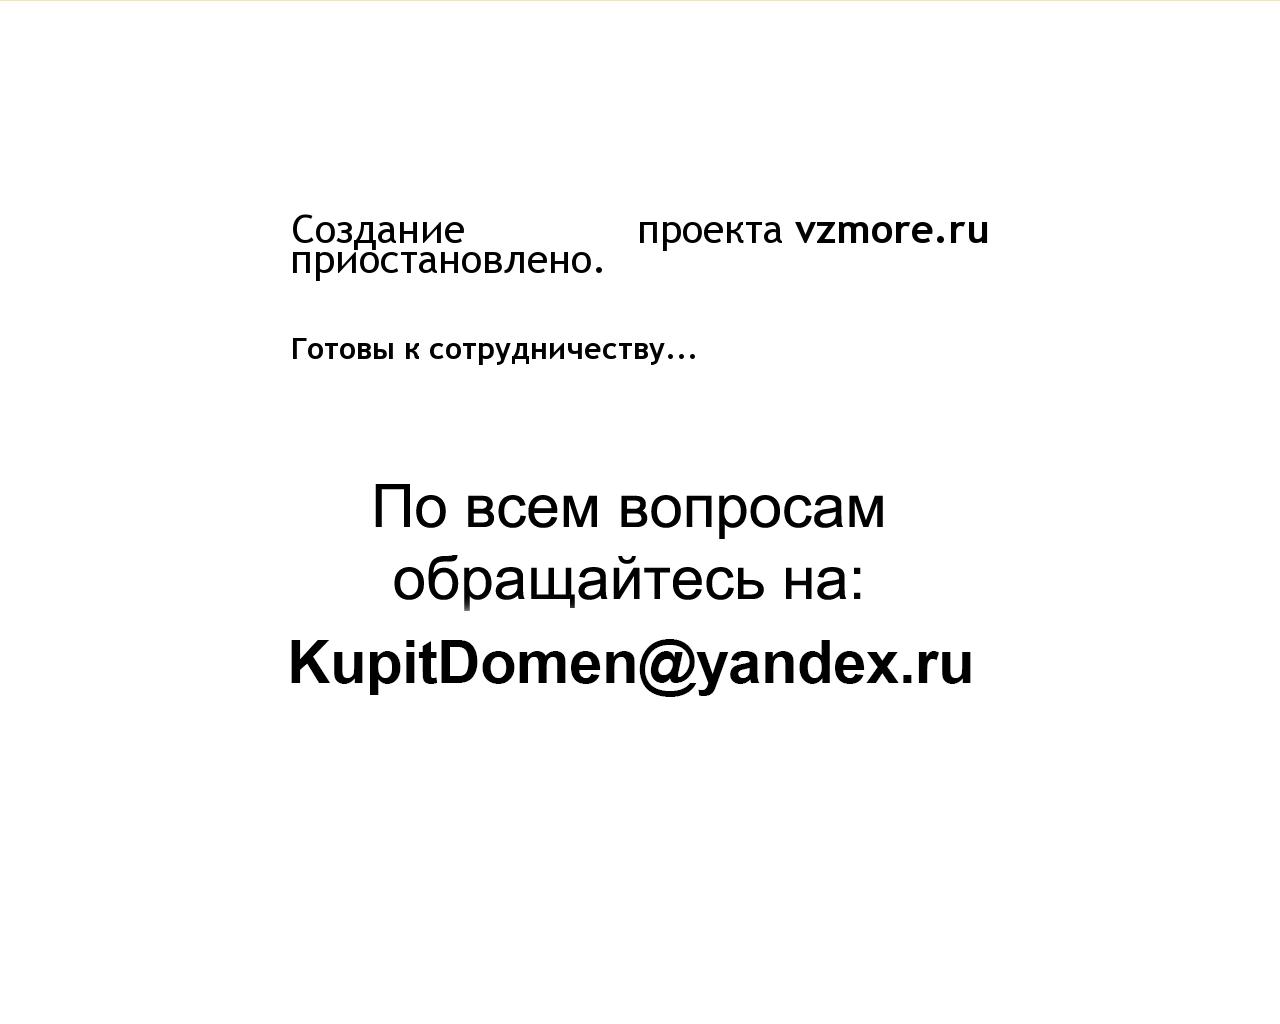 Изображение сайта vzmore.ru в разрешении 1280x1024